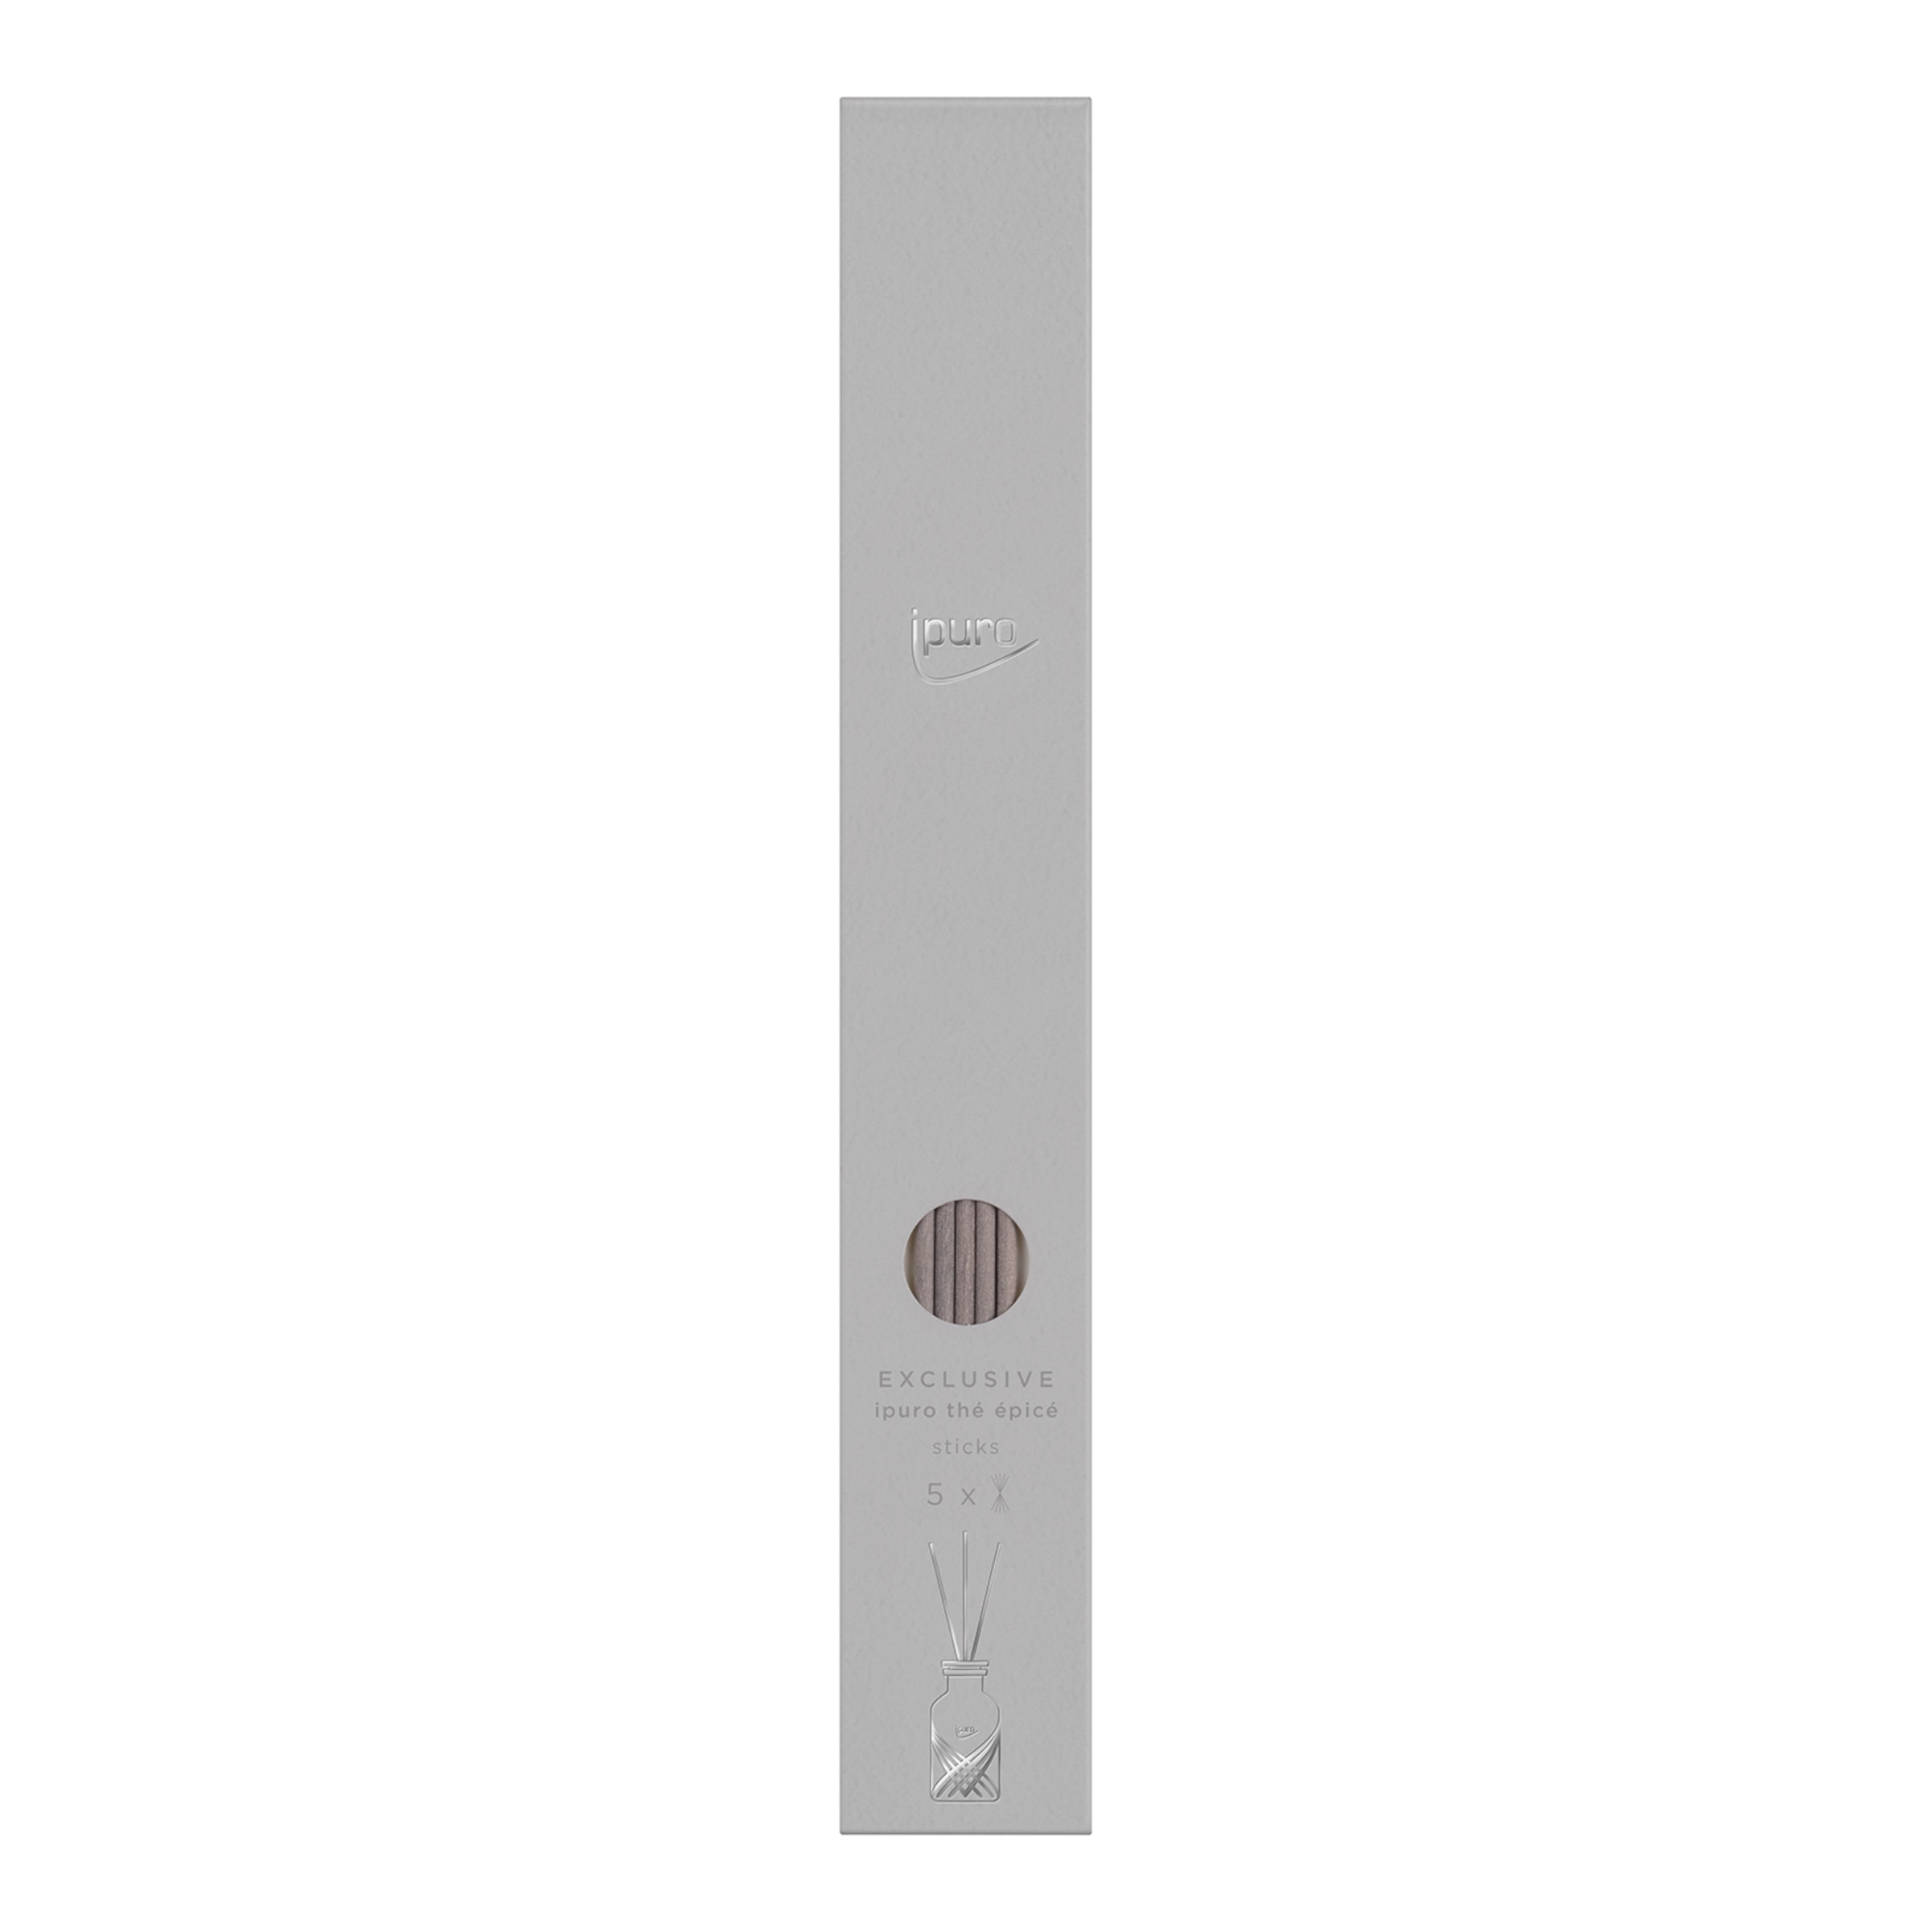 ipuro Essentials Scented Stick Set White - Buy online now